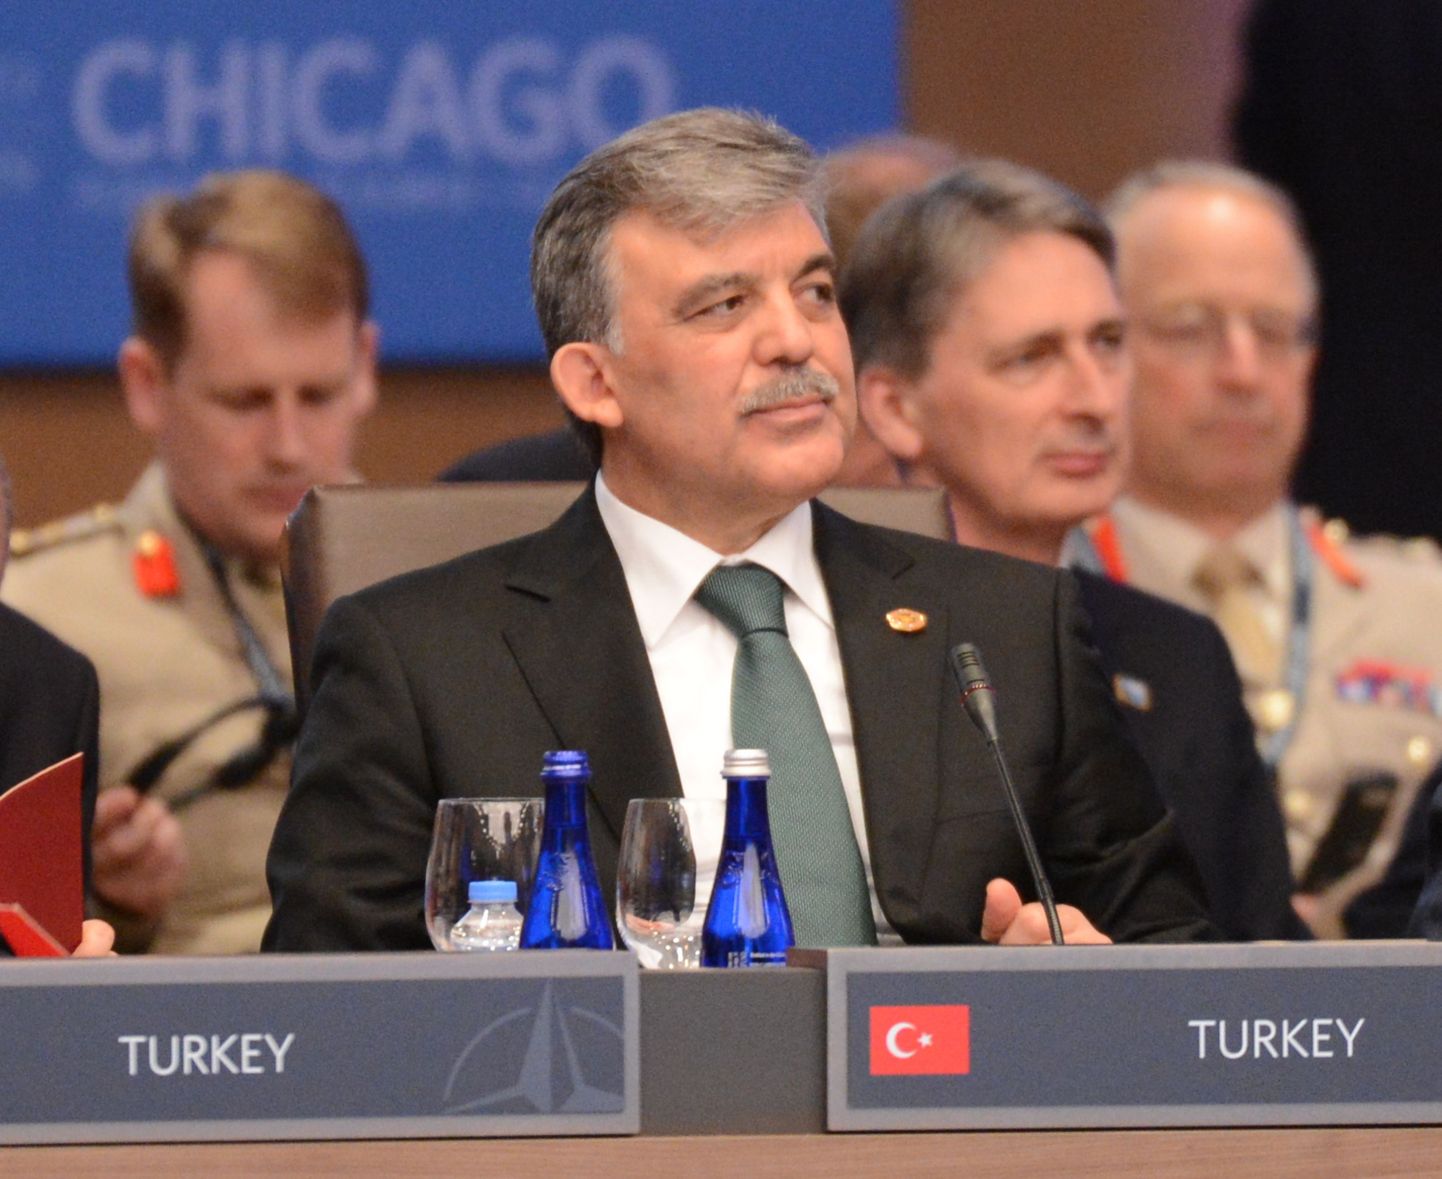 Türgi president Abdullah Gül